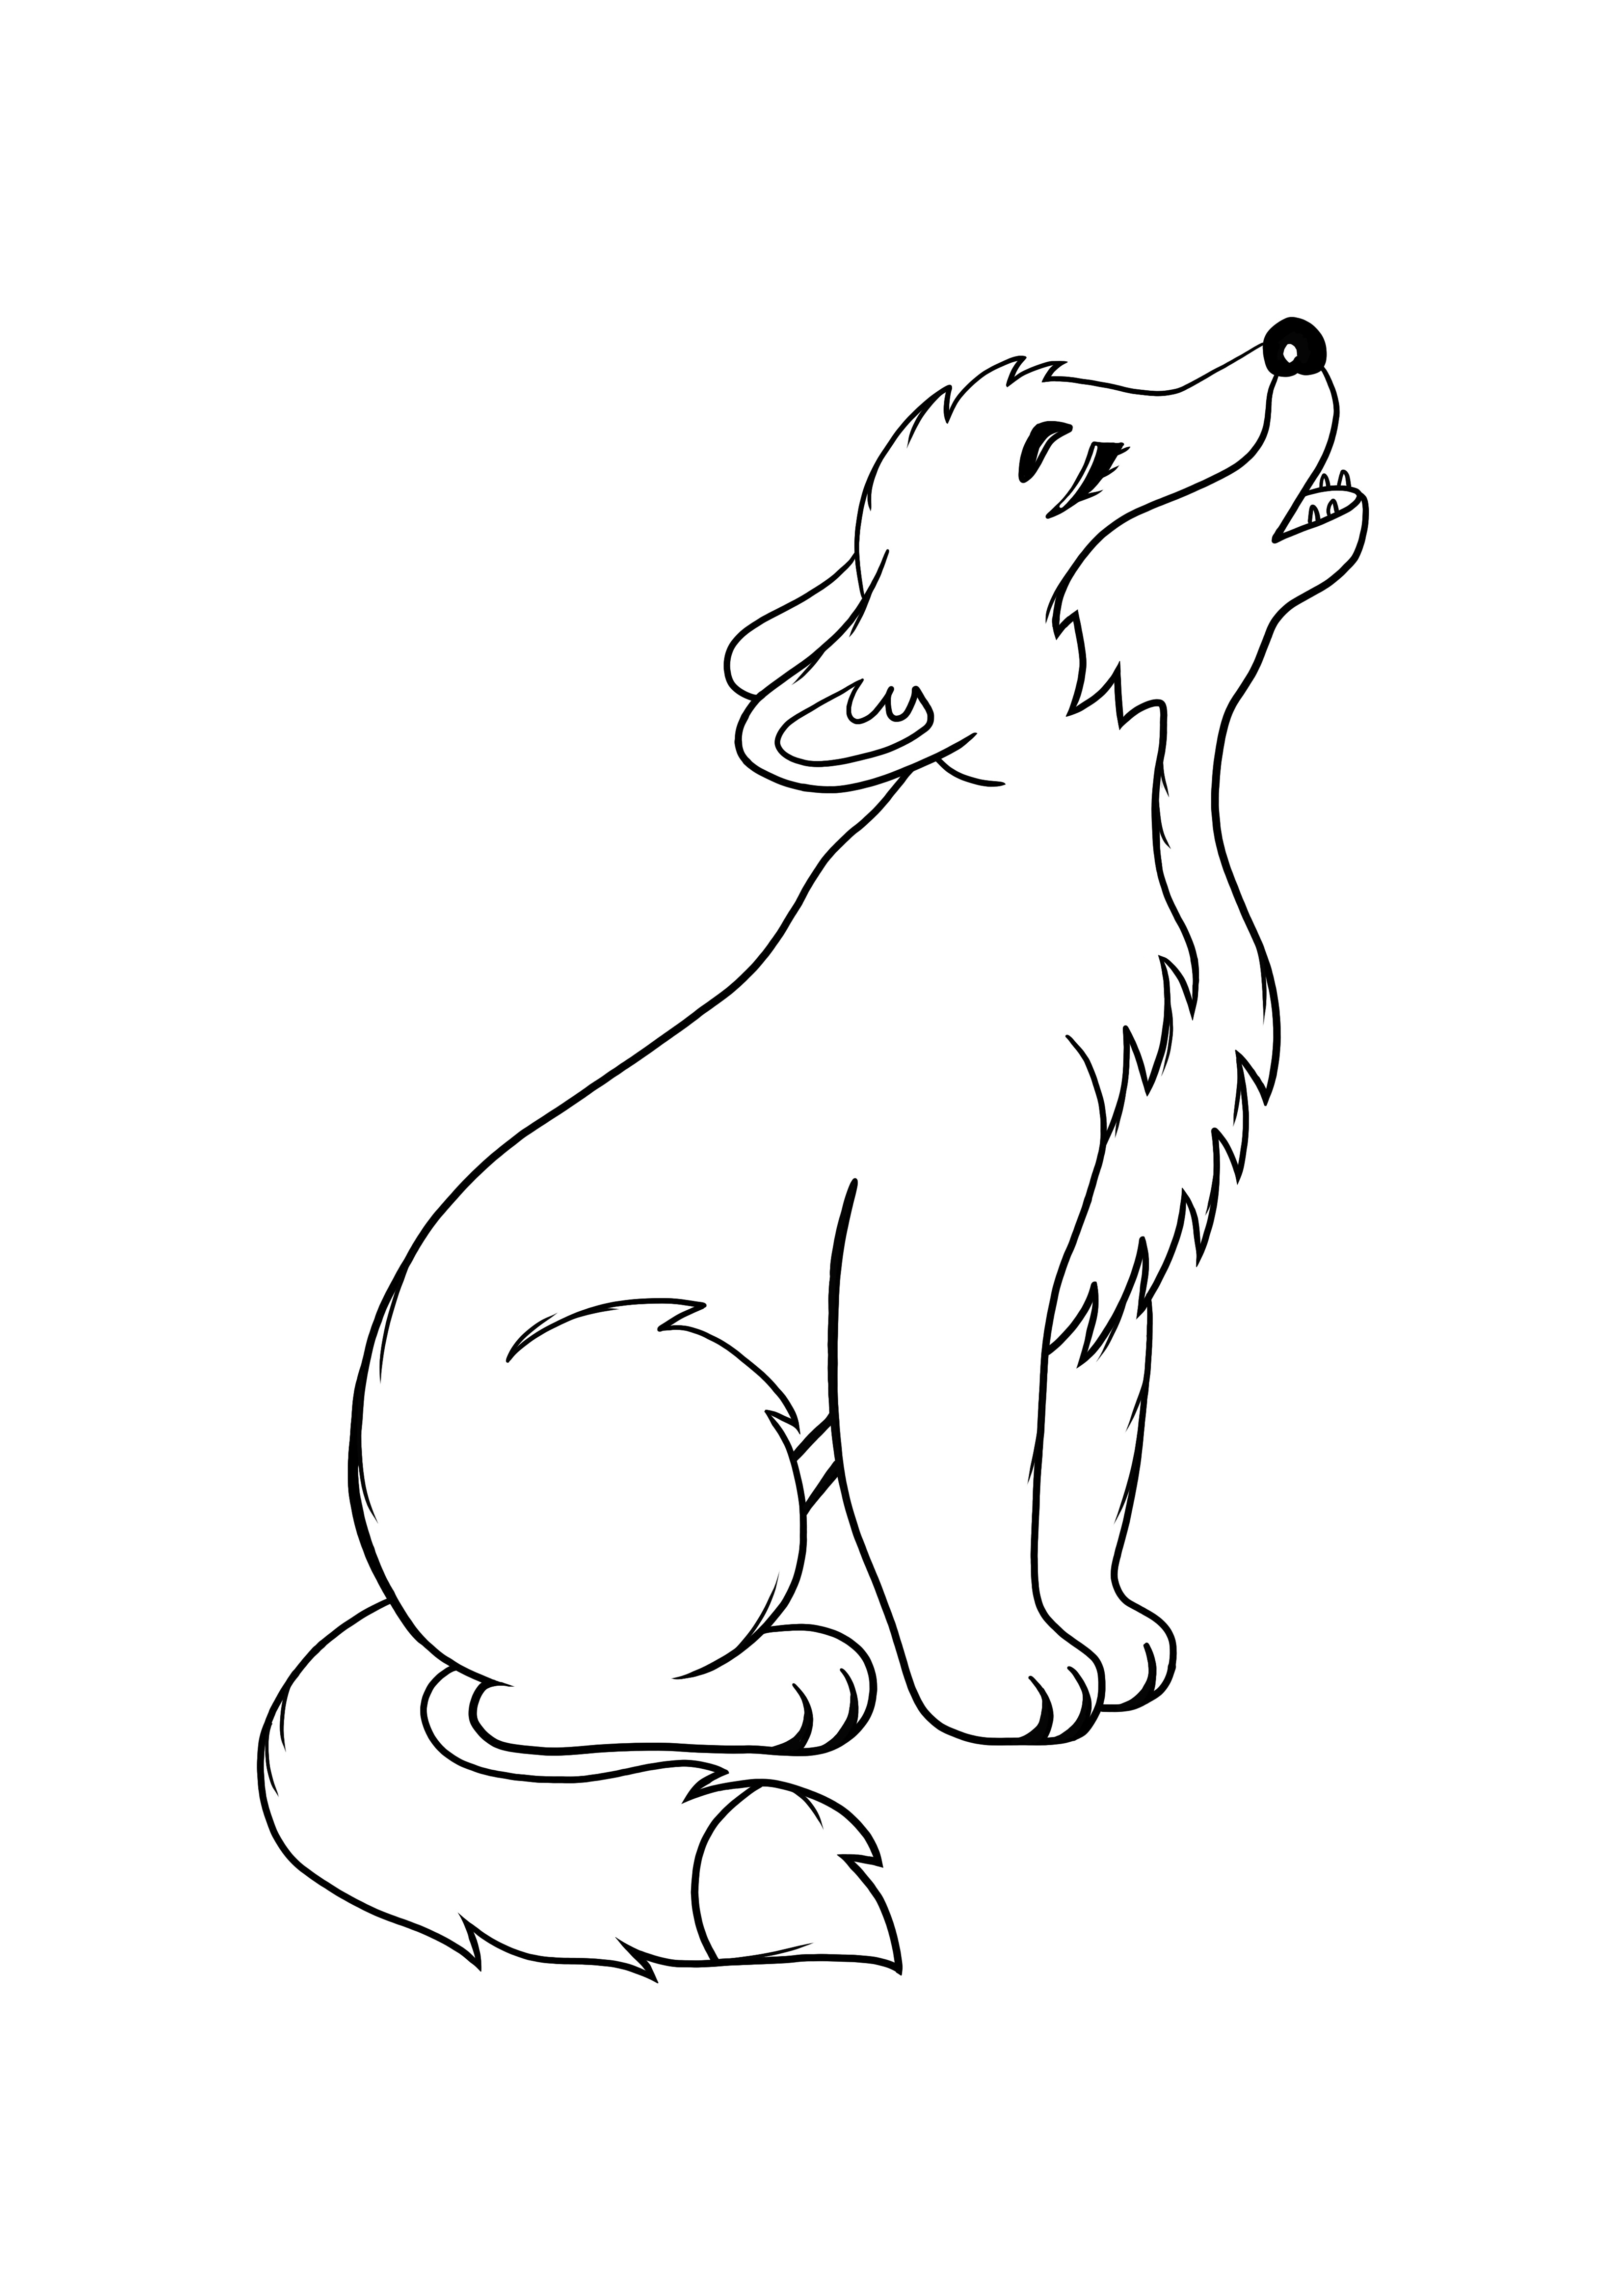 Desenho de lobo para colorir com poucos detalhes para impressão